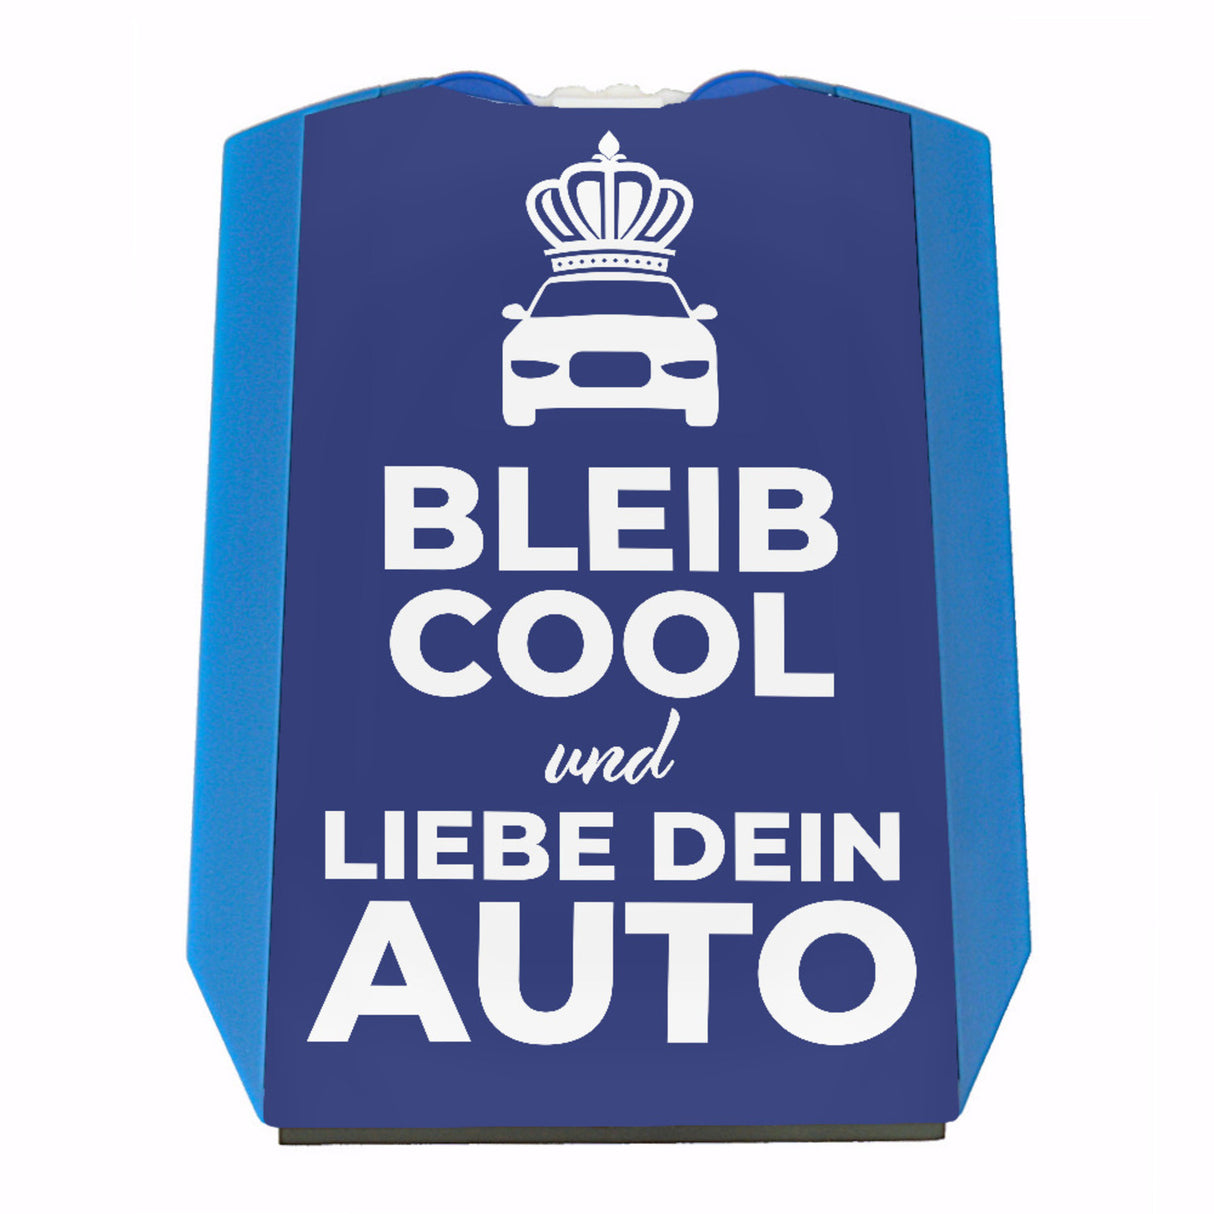 Parkscheibe Bleib cool und liebe dein Auto - Jetzt kaufen und cool bleiben!  –